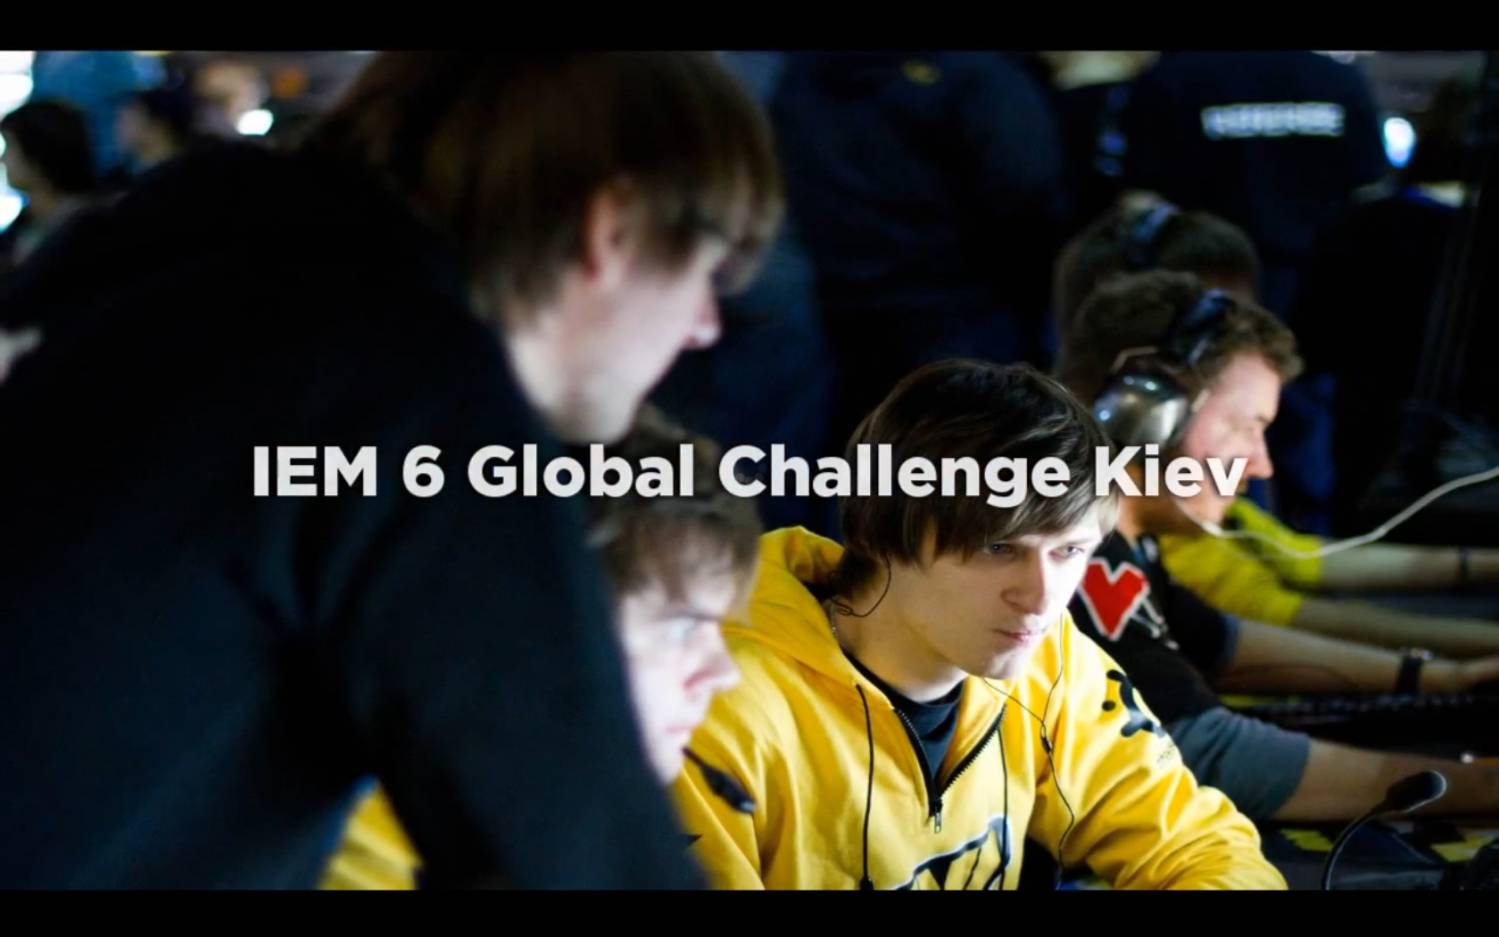 IEM6 Global Challenge Kiev 2012 fragmovie (by Domenik)